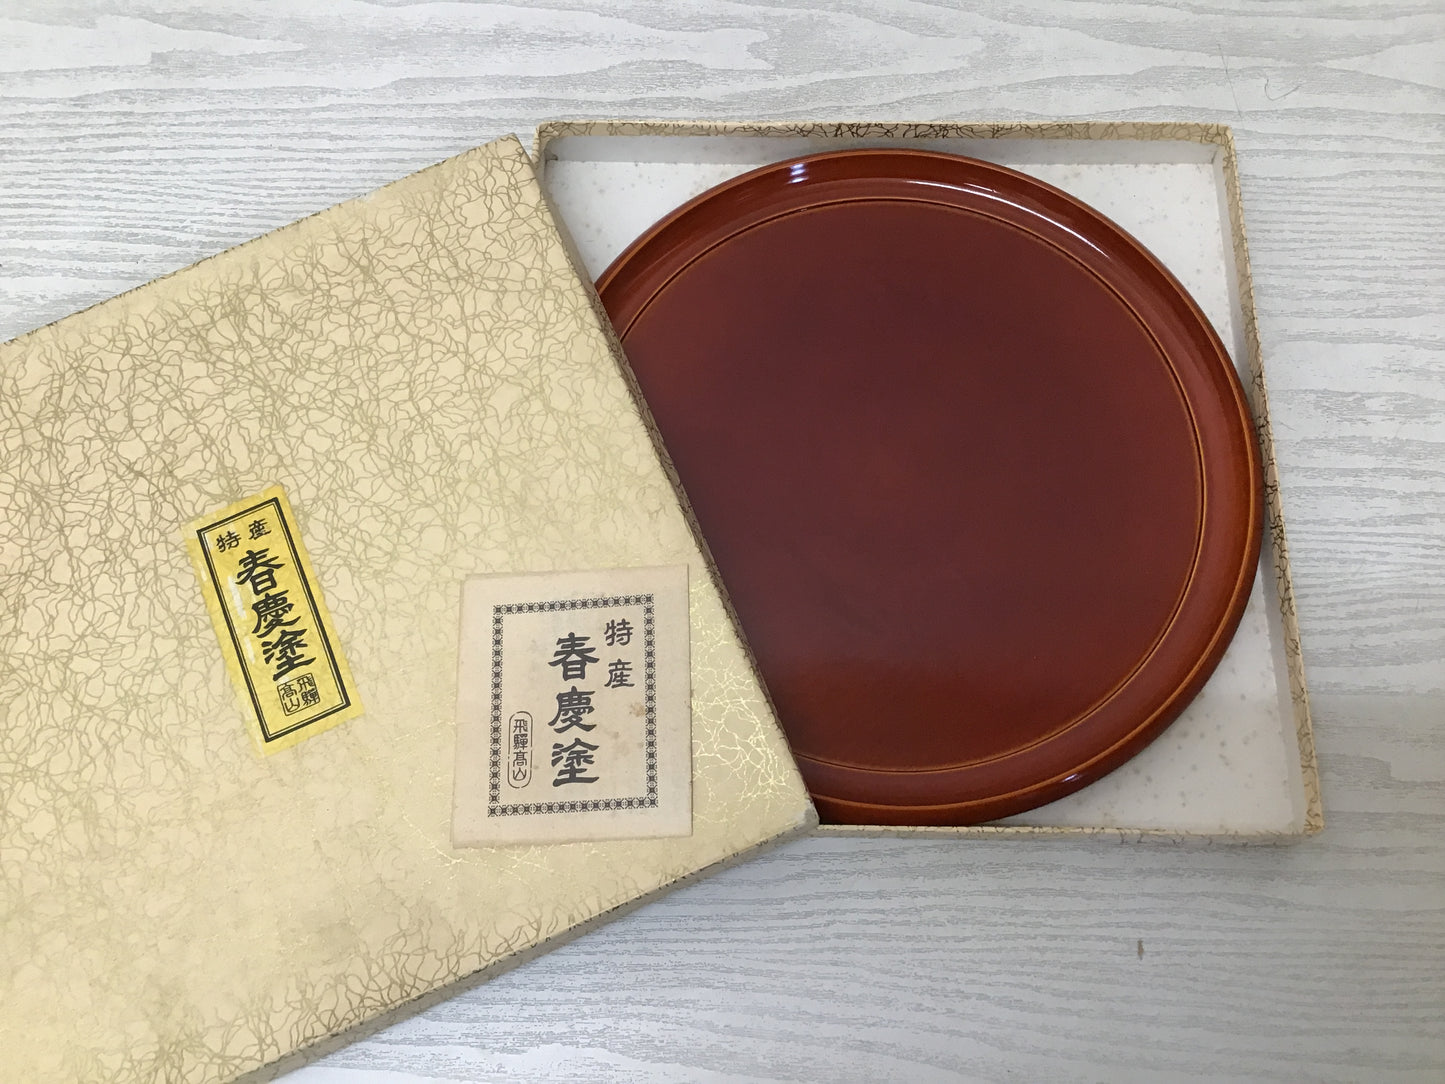 Y2617 TRAY Shunkei Lacquerware OBON OZEN server box Japan antique tableware